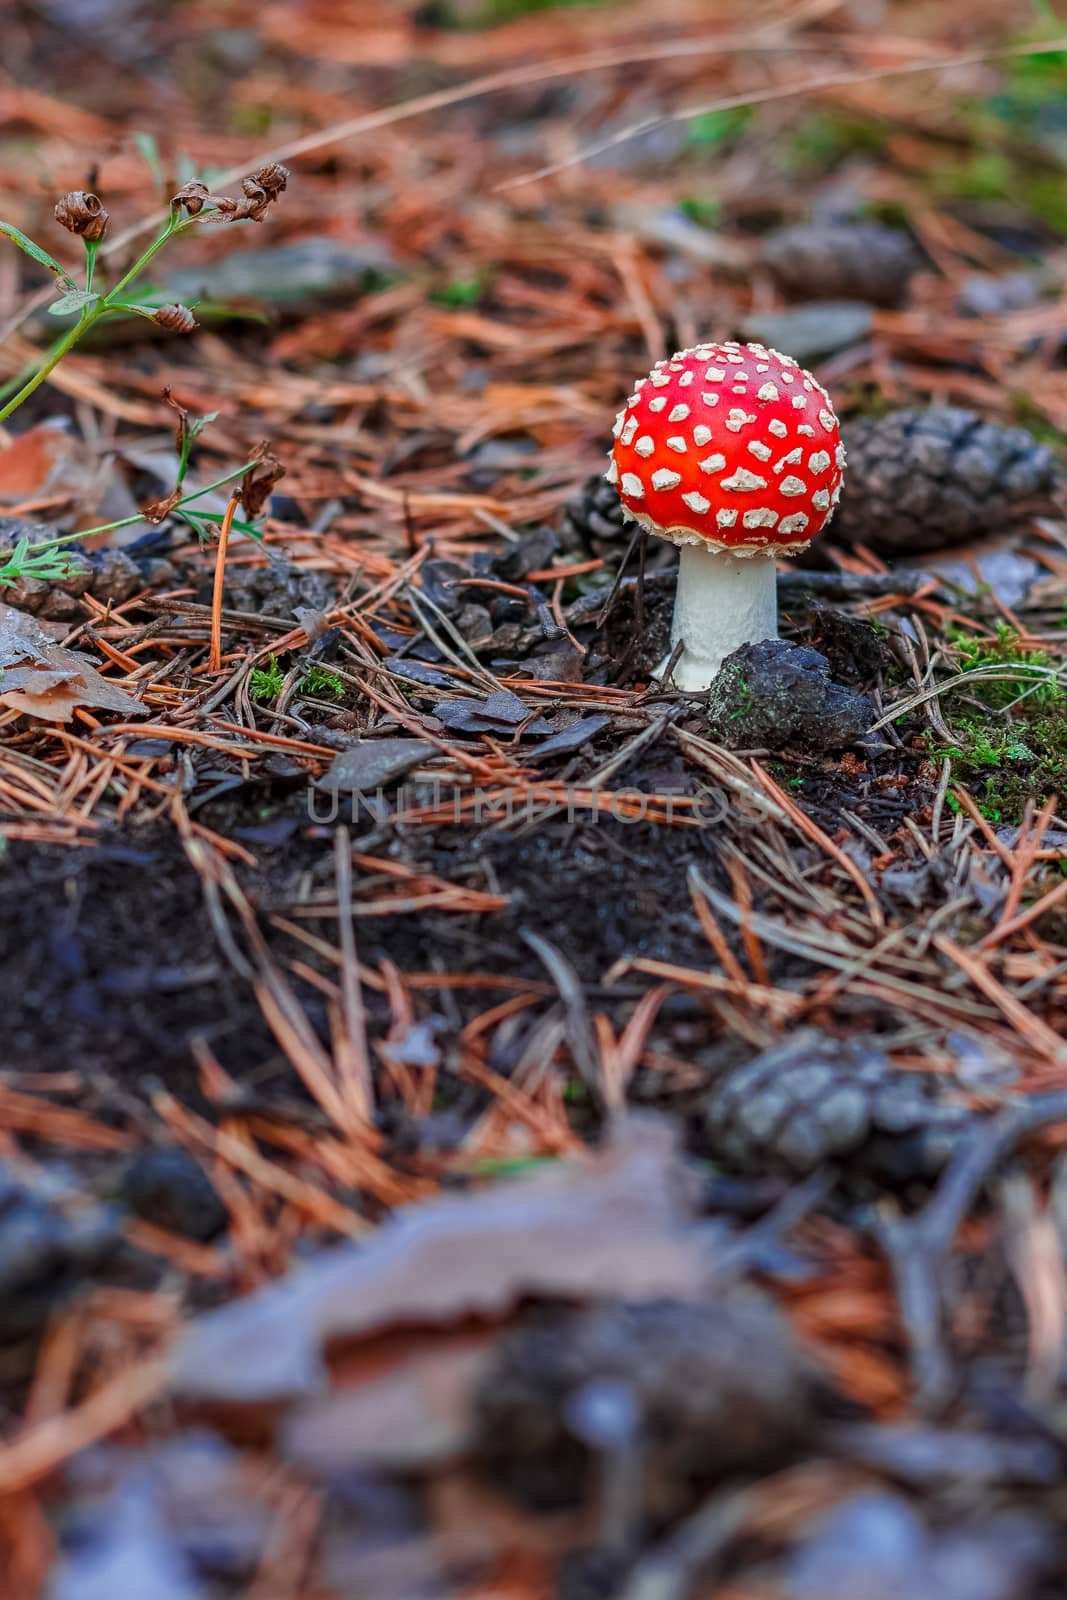 Red poisonous Amanita mushroom by sengnsp